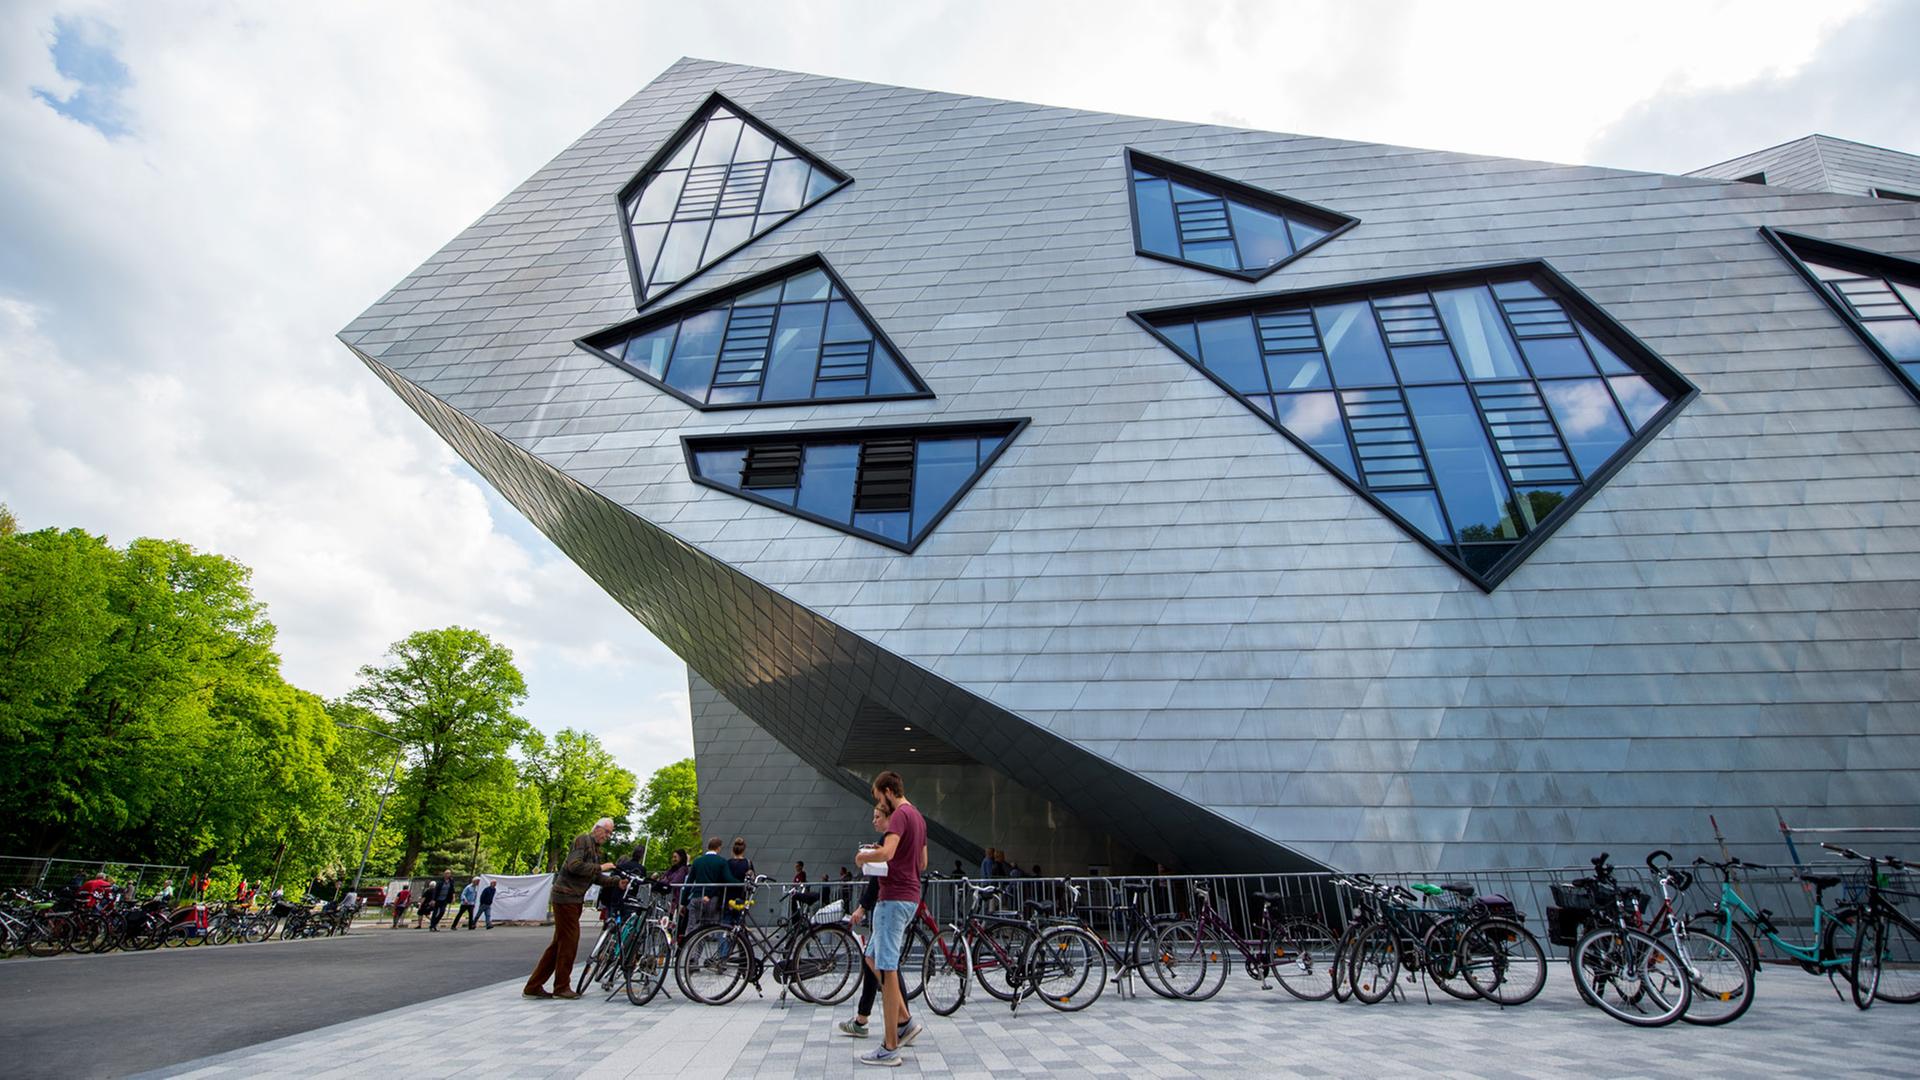 Tag der offenen Tür an der Leuphana Universität in Lüneburg: Das neue Zentralgebäude wurde von Daniel Libeskind entworfen.